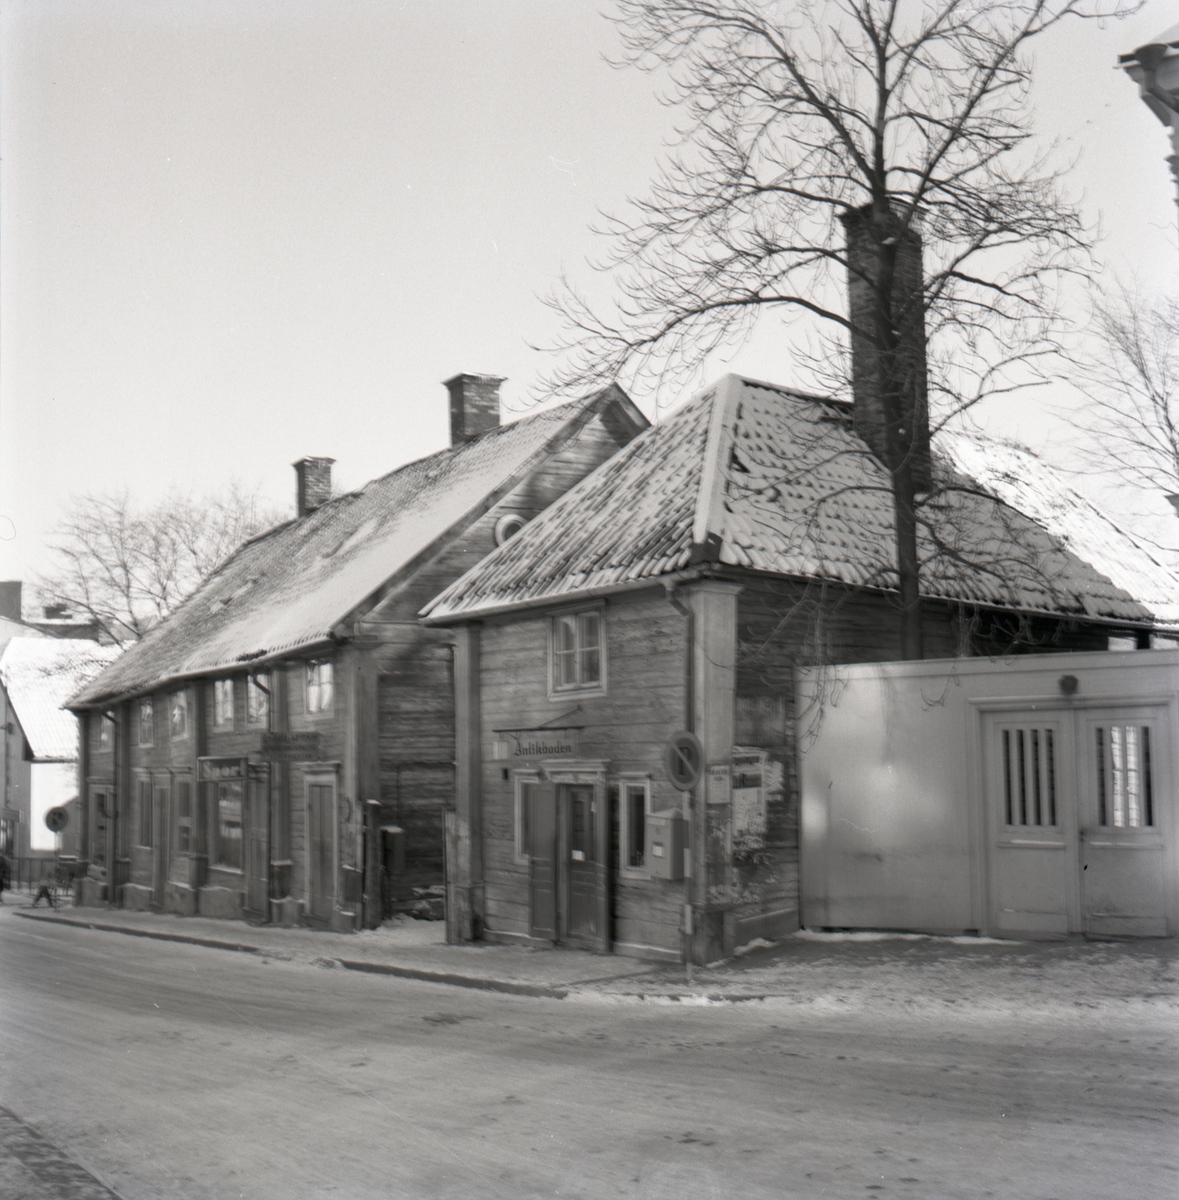 Baron von Lingens gård, Storgatan 58.
Huset flyttades till Gamla Linköping från Storgatan 58. Byggnaden uppfördes av biskop Andreas Rhyzelius på 1720-talet. Den återspeglar den karolinska strävheten - det nakna rödtjärade timret, de smårutiga fönstren med grågröna foder och det valmade spåntaket. Gårdsidan har en liten annan karaktär, den dubbla fritrappan ger den en öppenhet som gatufasaden saknar. Till gården hör en fristående köksflygel. År 1784 köpte friherre Herman von Lingen gården. År 1958 skänkte Östgöta Stadshypoteksförening gården till Gamla Linköping.
När bilden togs drev kompanjonerna Ohlsson och Justin Antikboden i gårdens gamla köksflygel.